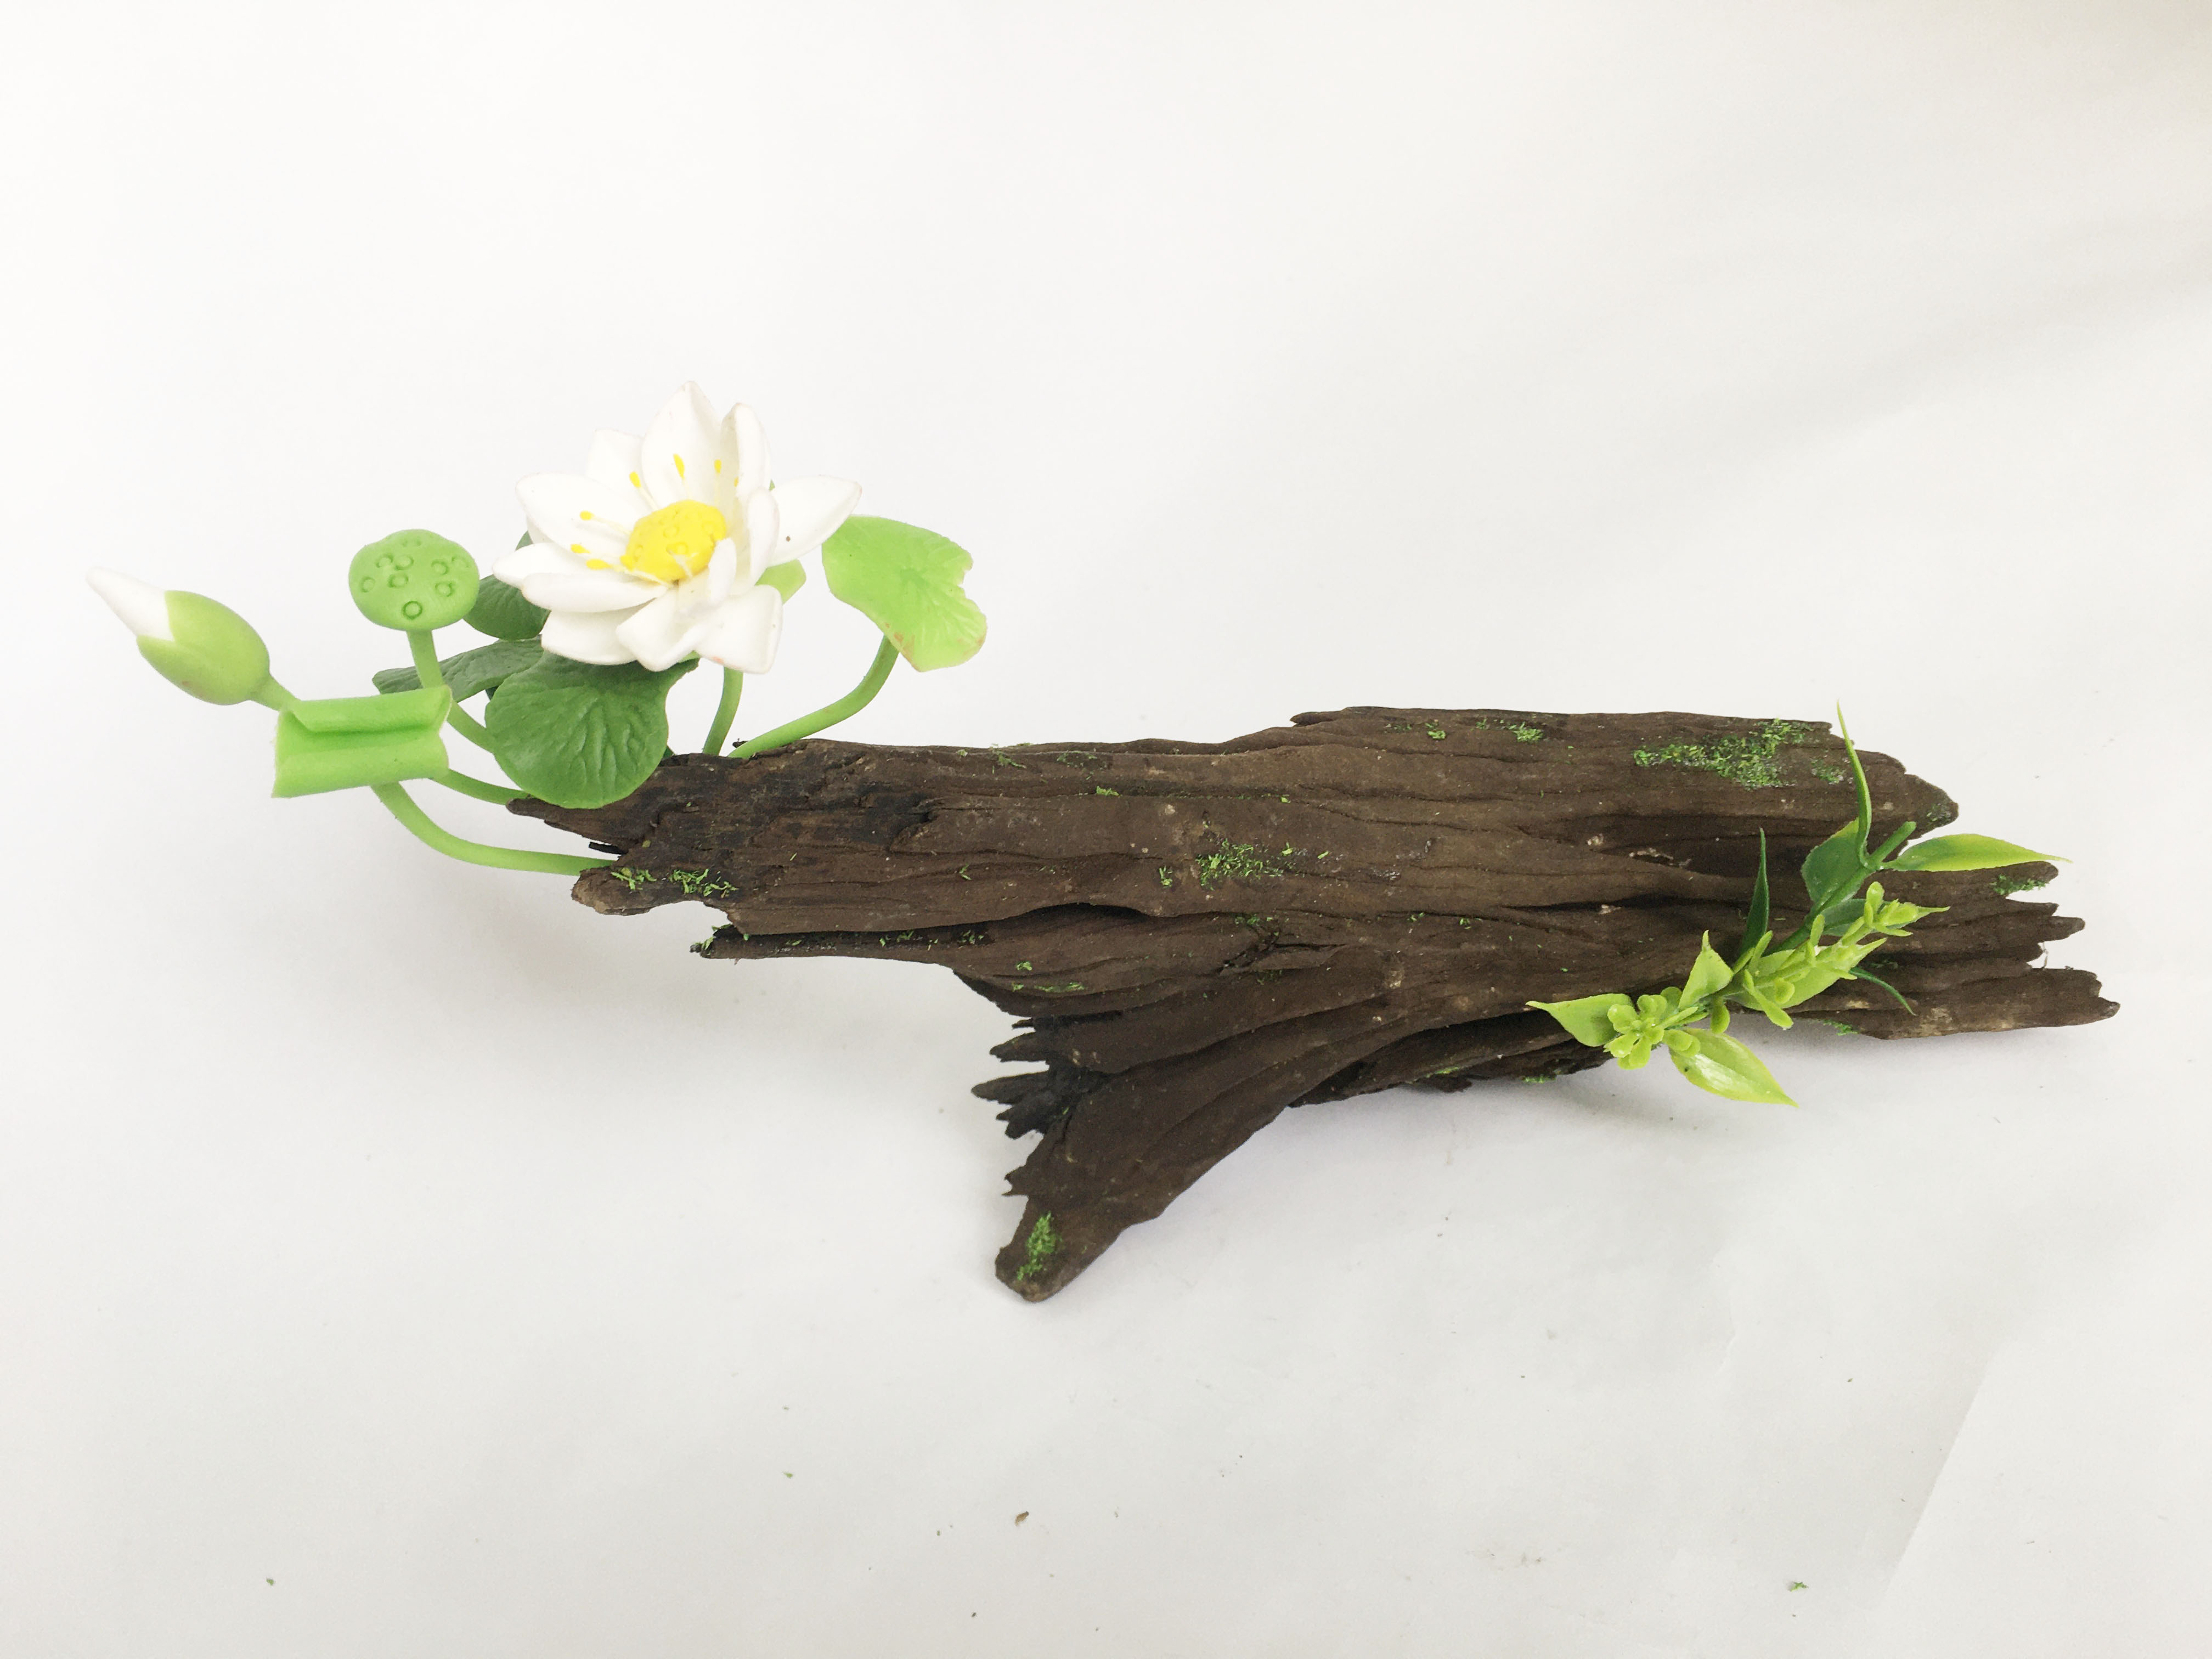 Lũa gỗ hình dáng tự nhiên kết hợp Hoa sen đất sét mini (1 bụi sen trắng) - Quà tặng trang trí handmade (20x10x10cm)